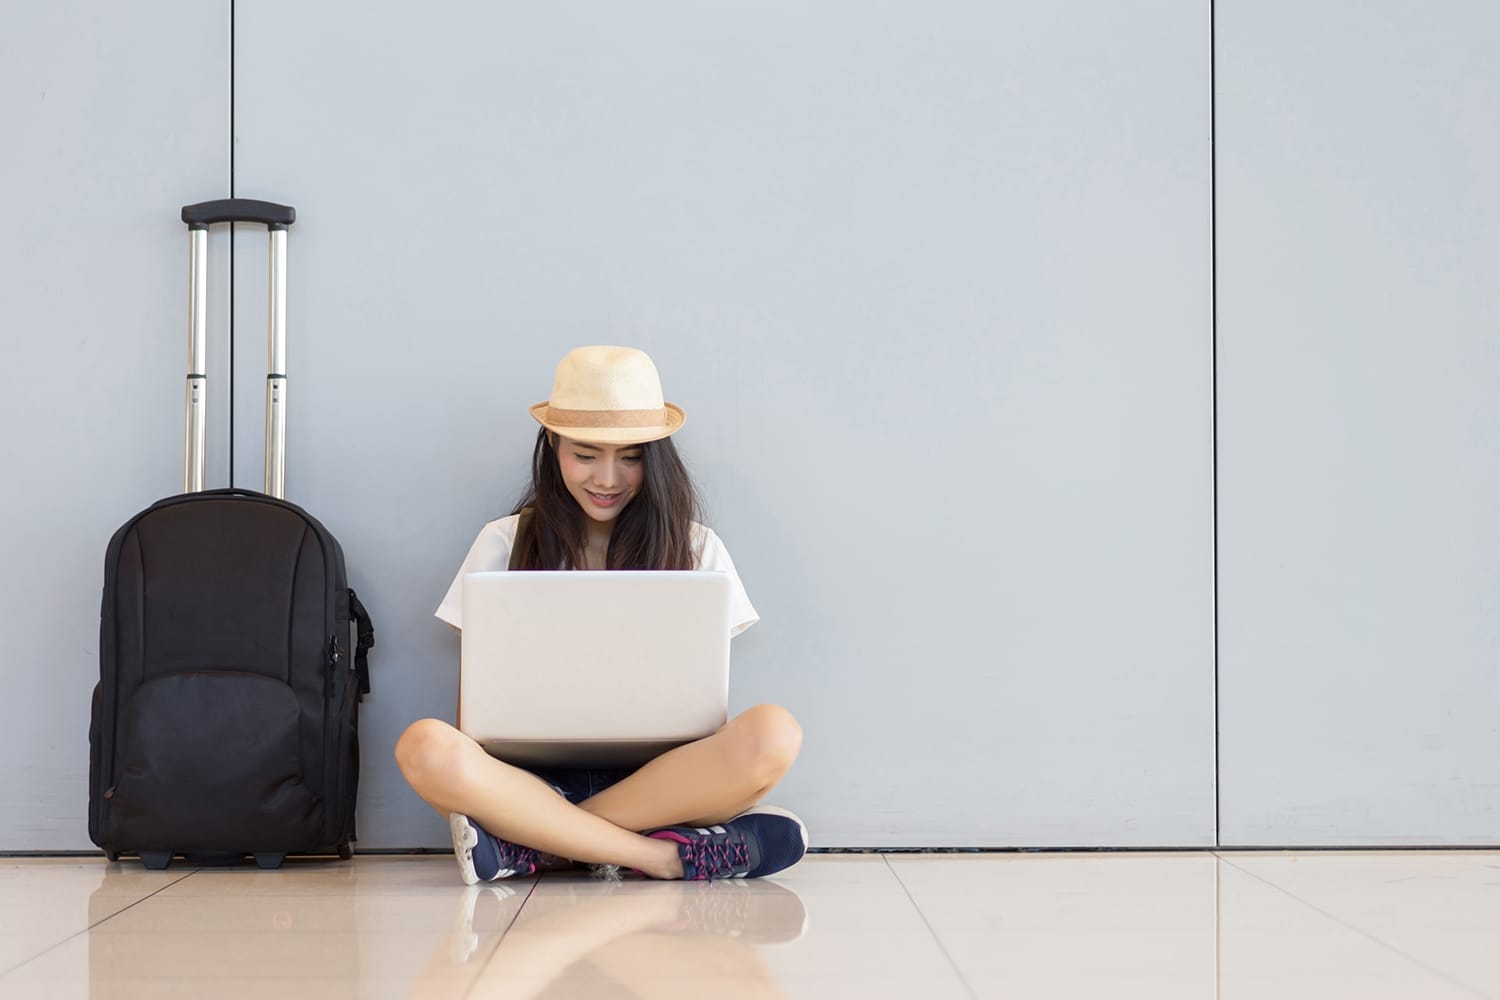 Gadis remaja asia menggunakan laptop di terminal bandara duduk dengan koper bagasi dan ransel untuk perjalanan liburan musim panas dengan santai menunggu transportasi penerbangan atau pemesanan tiket